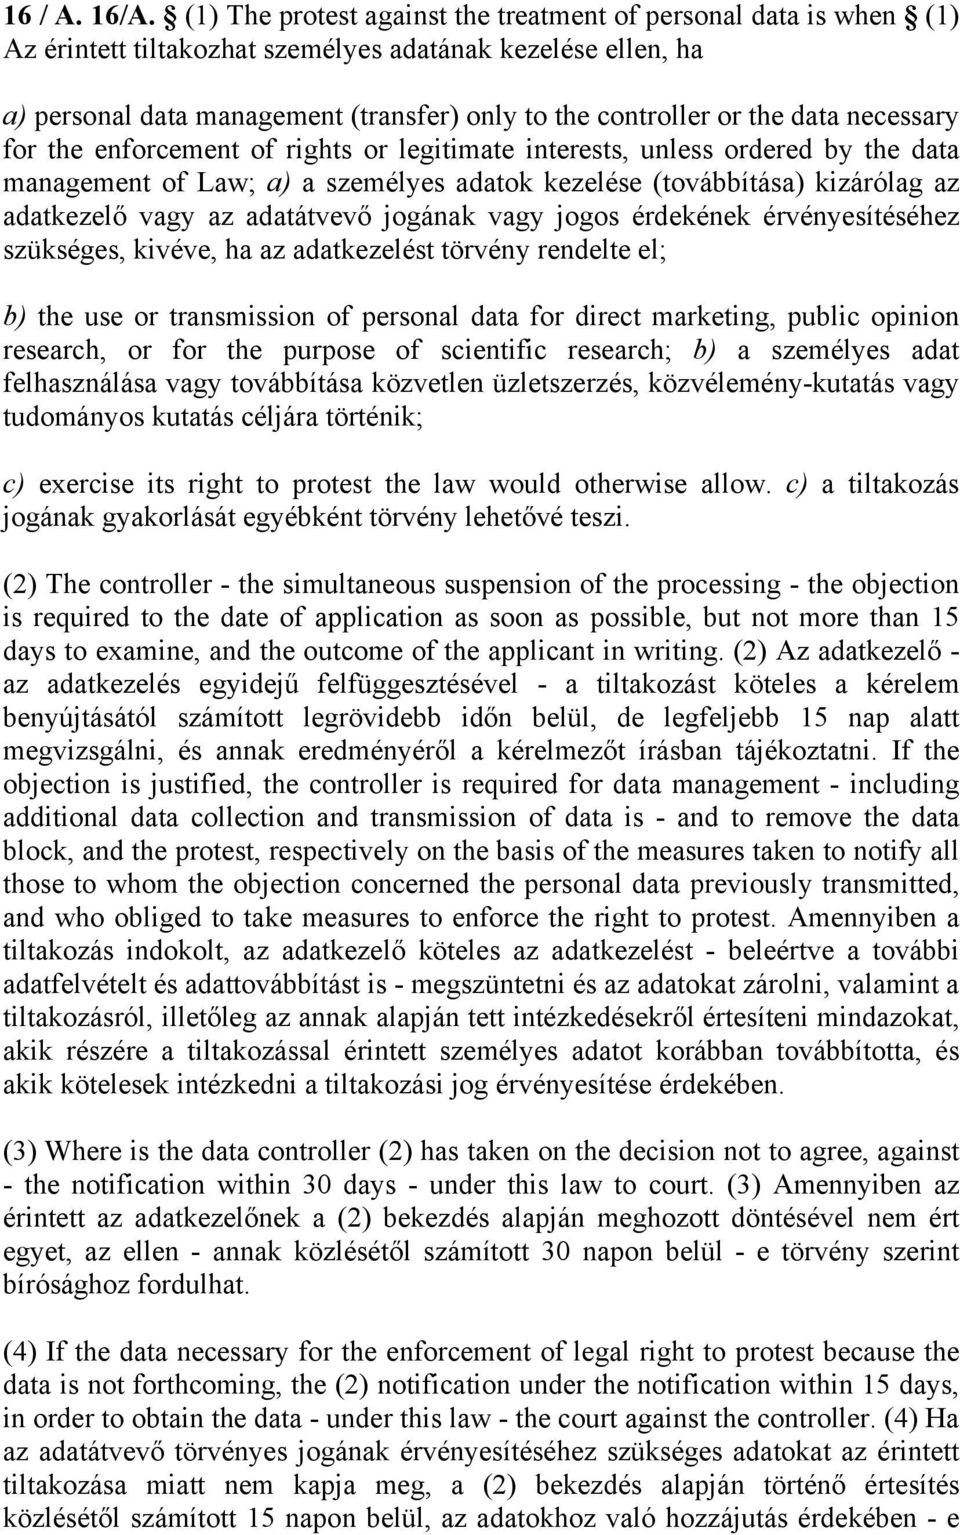 data necessary for the enforcement of rights or legitimate interests, unless ordered by the data management of Law; a) a személyes adatok kezelése (továbbítása) kizárólag az adatkezelő vagy az